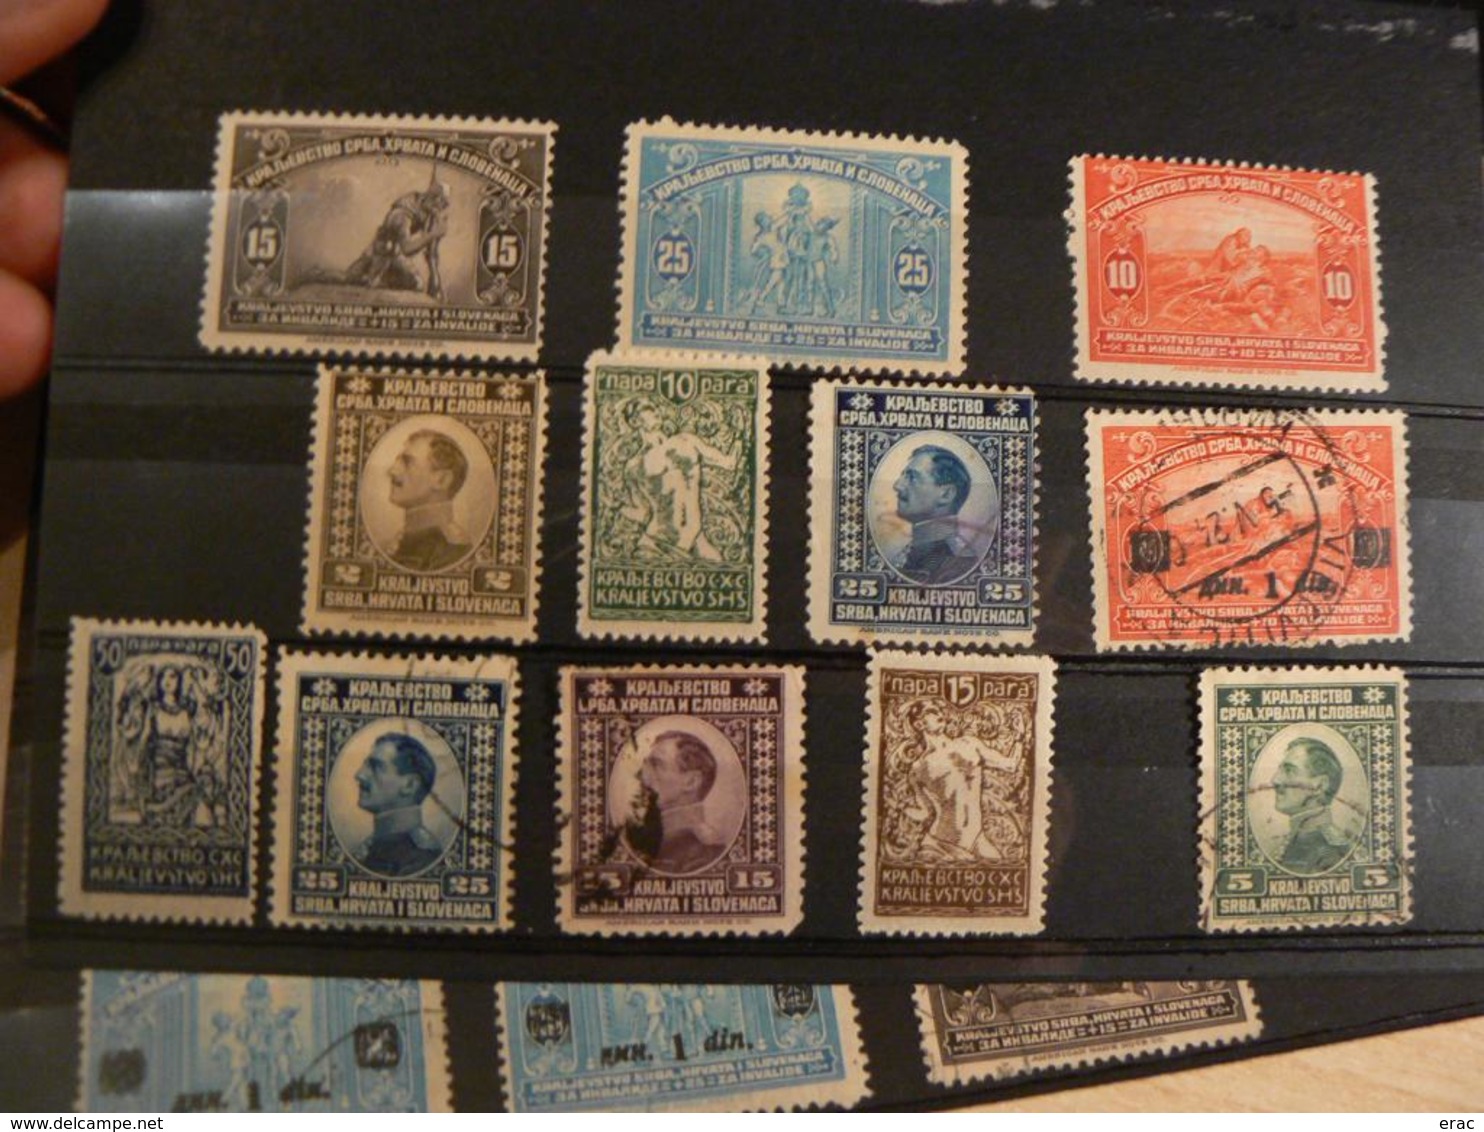 Yougoslavie - Lot de timbres anciens